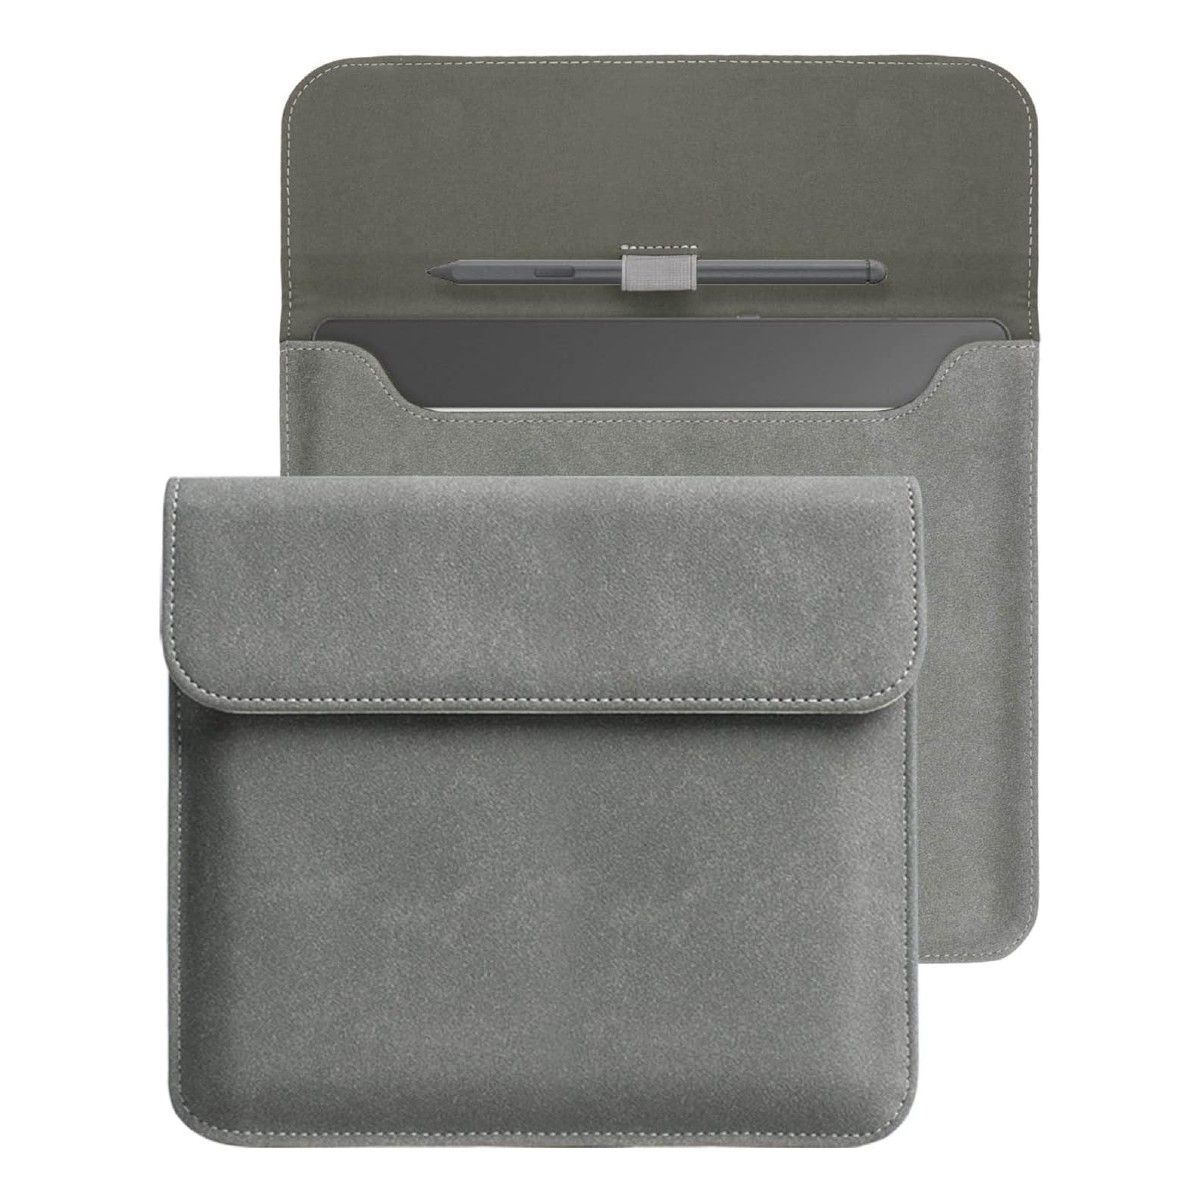 Uma capa de camurça cinza para o Kindle Scribe mostrando seu estado aberto e fechado